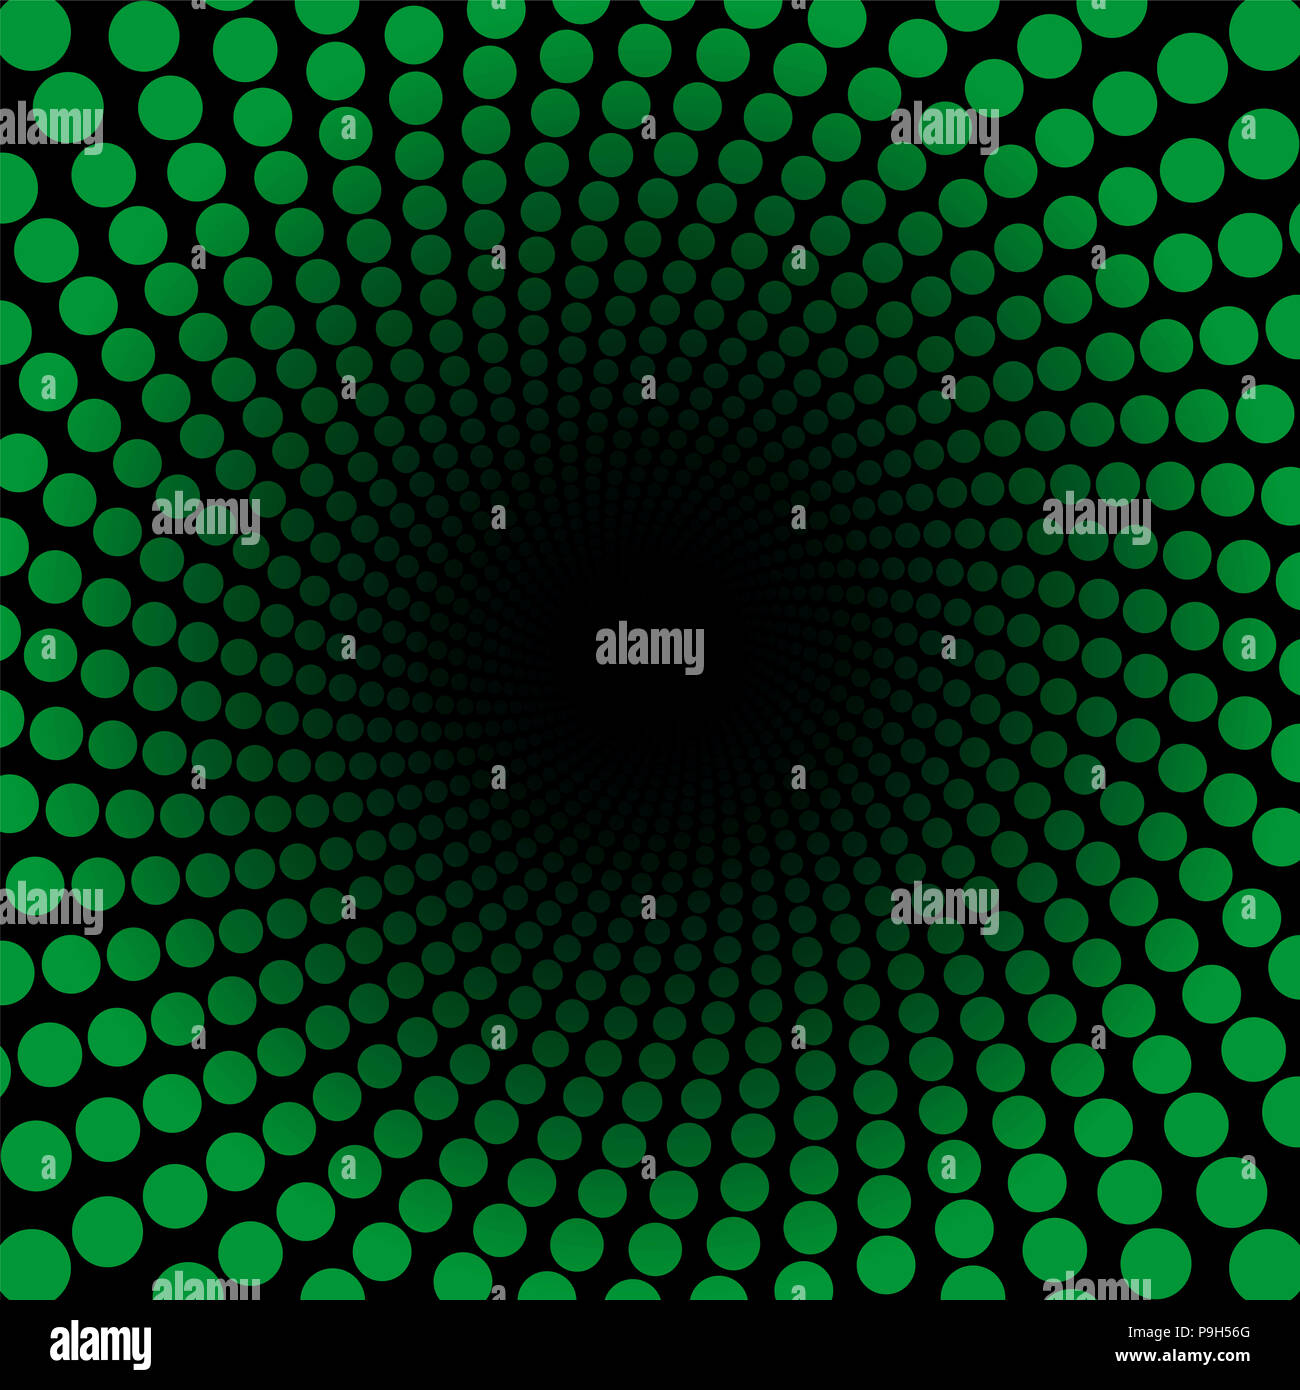 Spiralförmige Muster mit grünen Punkten, Tunnel mit schwarzem Zentrum - twisted Rundschreiben fraktale Hintergrundbild. Stockfoto